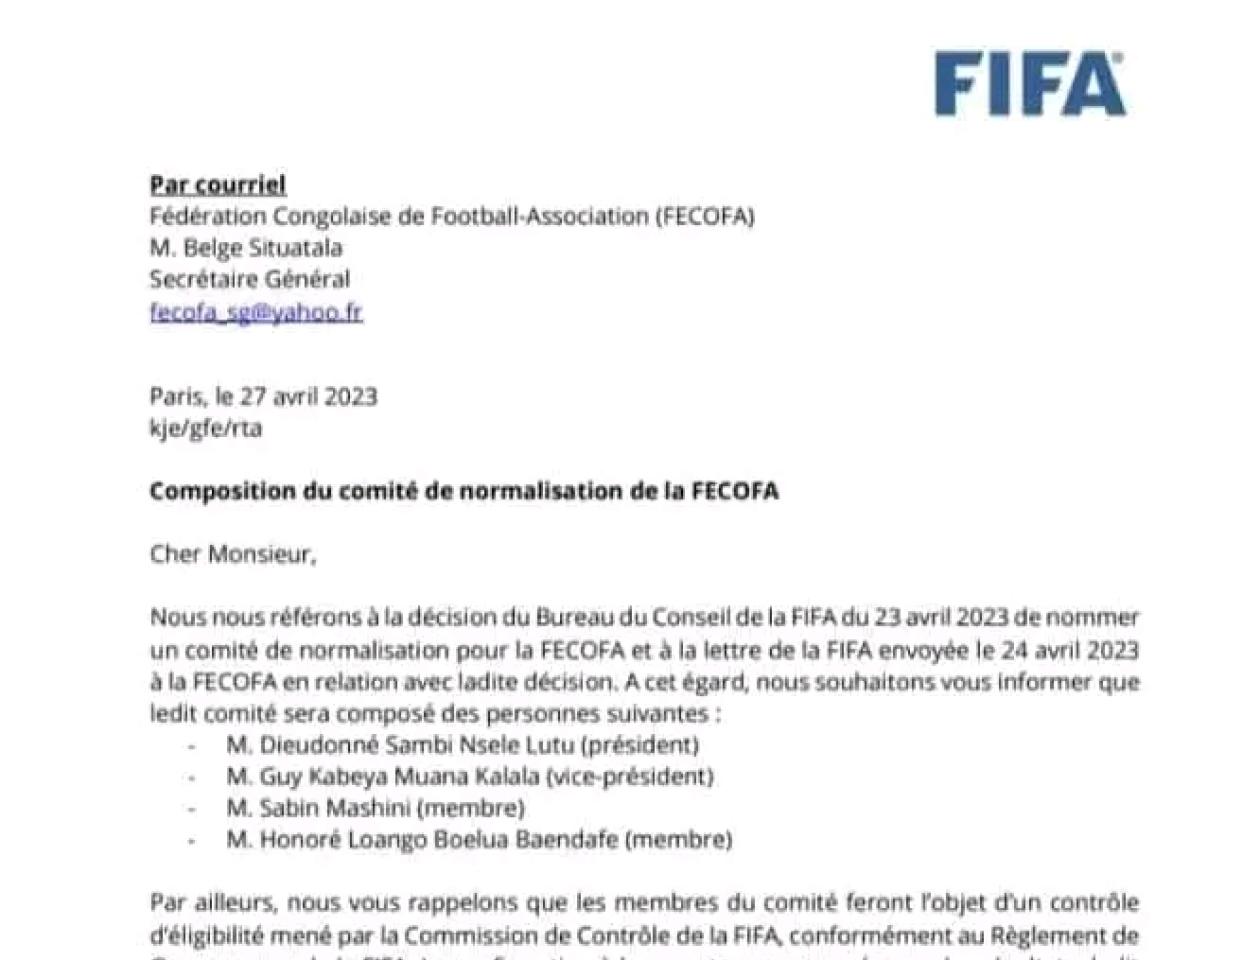 Paris, Correspondance de la FIFA adressée à la FECOFA, 27 avril 2023.